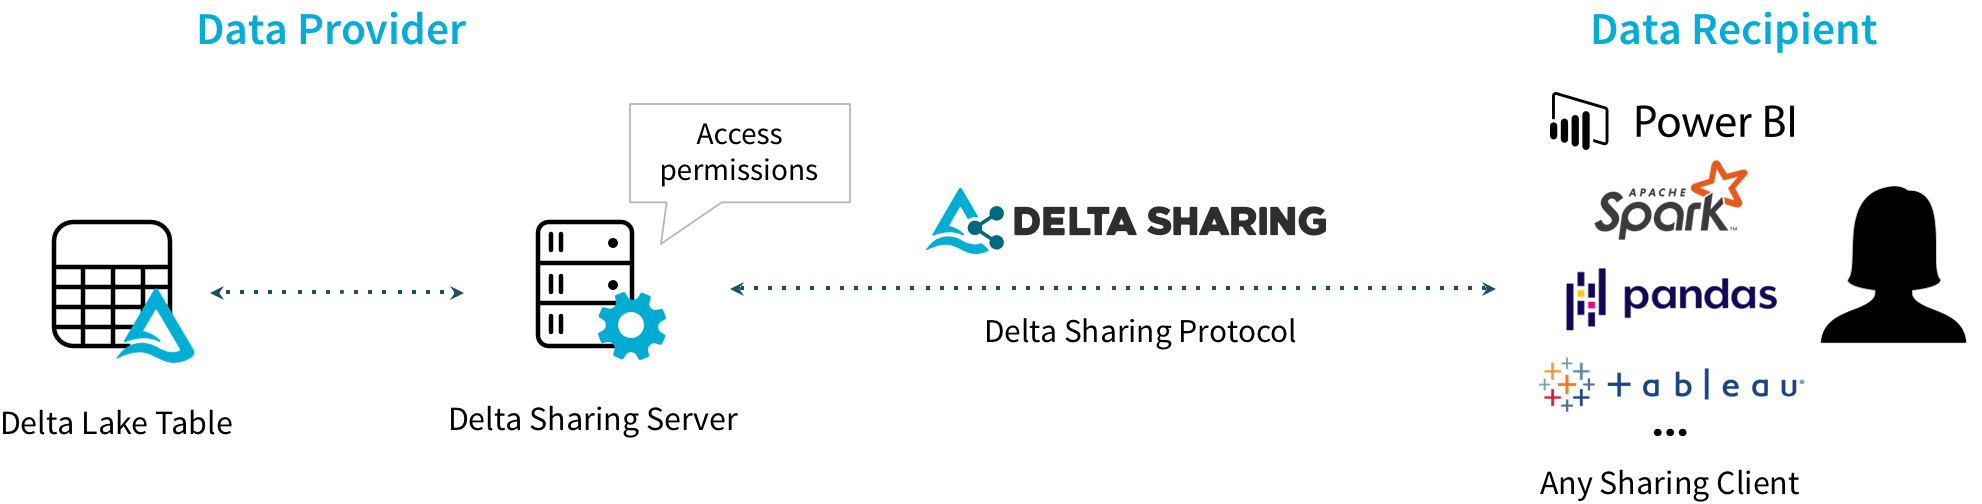 delta-sharing.png